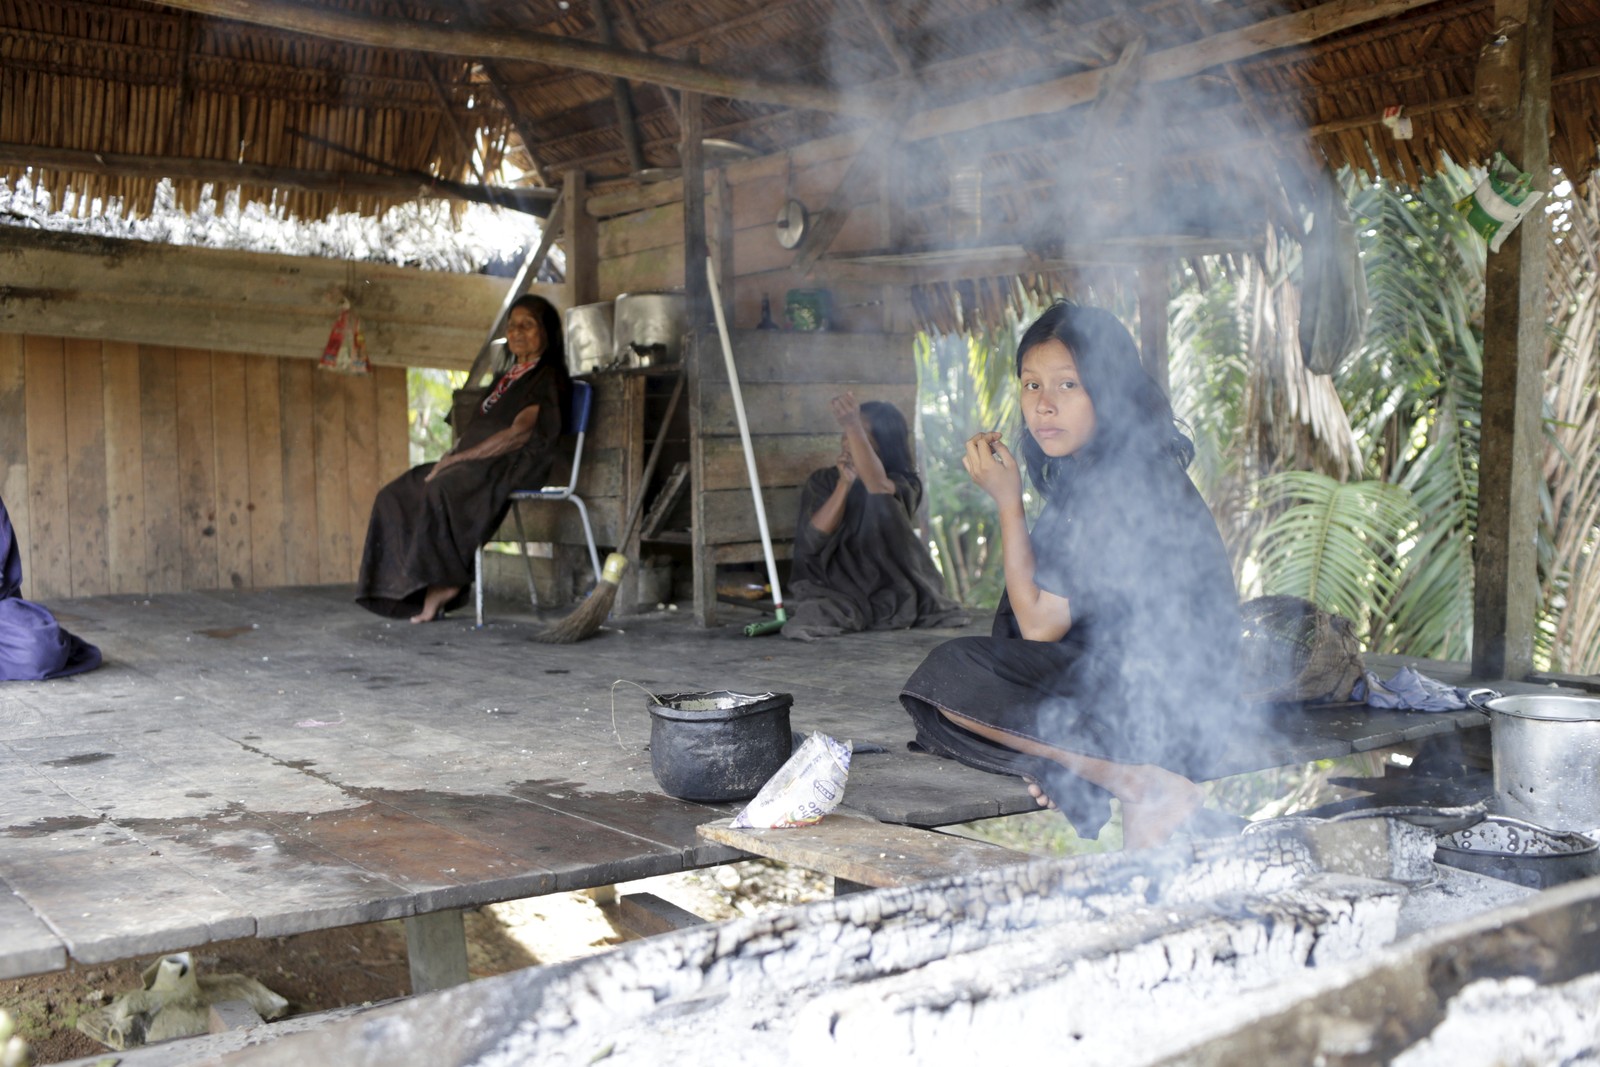 As meninas ashaninkas ajudam as mães no preparo de alimentos, tecelagem e colheita, enqianto os meninos aprendem a pilotar barcos e construir casas — Foto: Domingos Peixoto / Agência O Globo